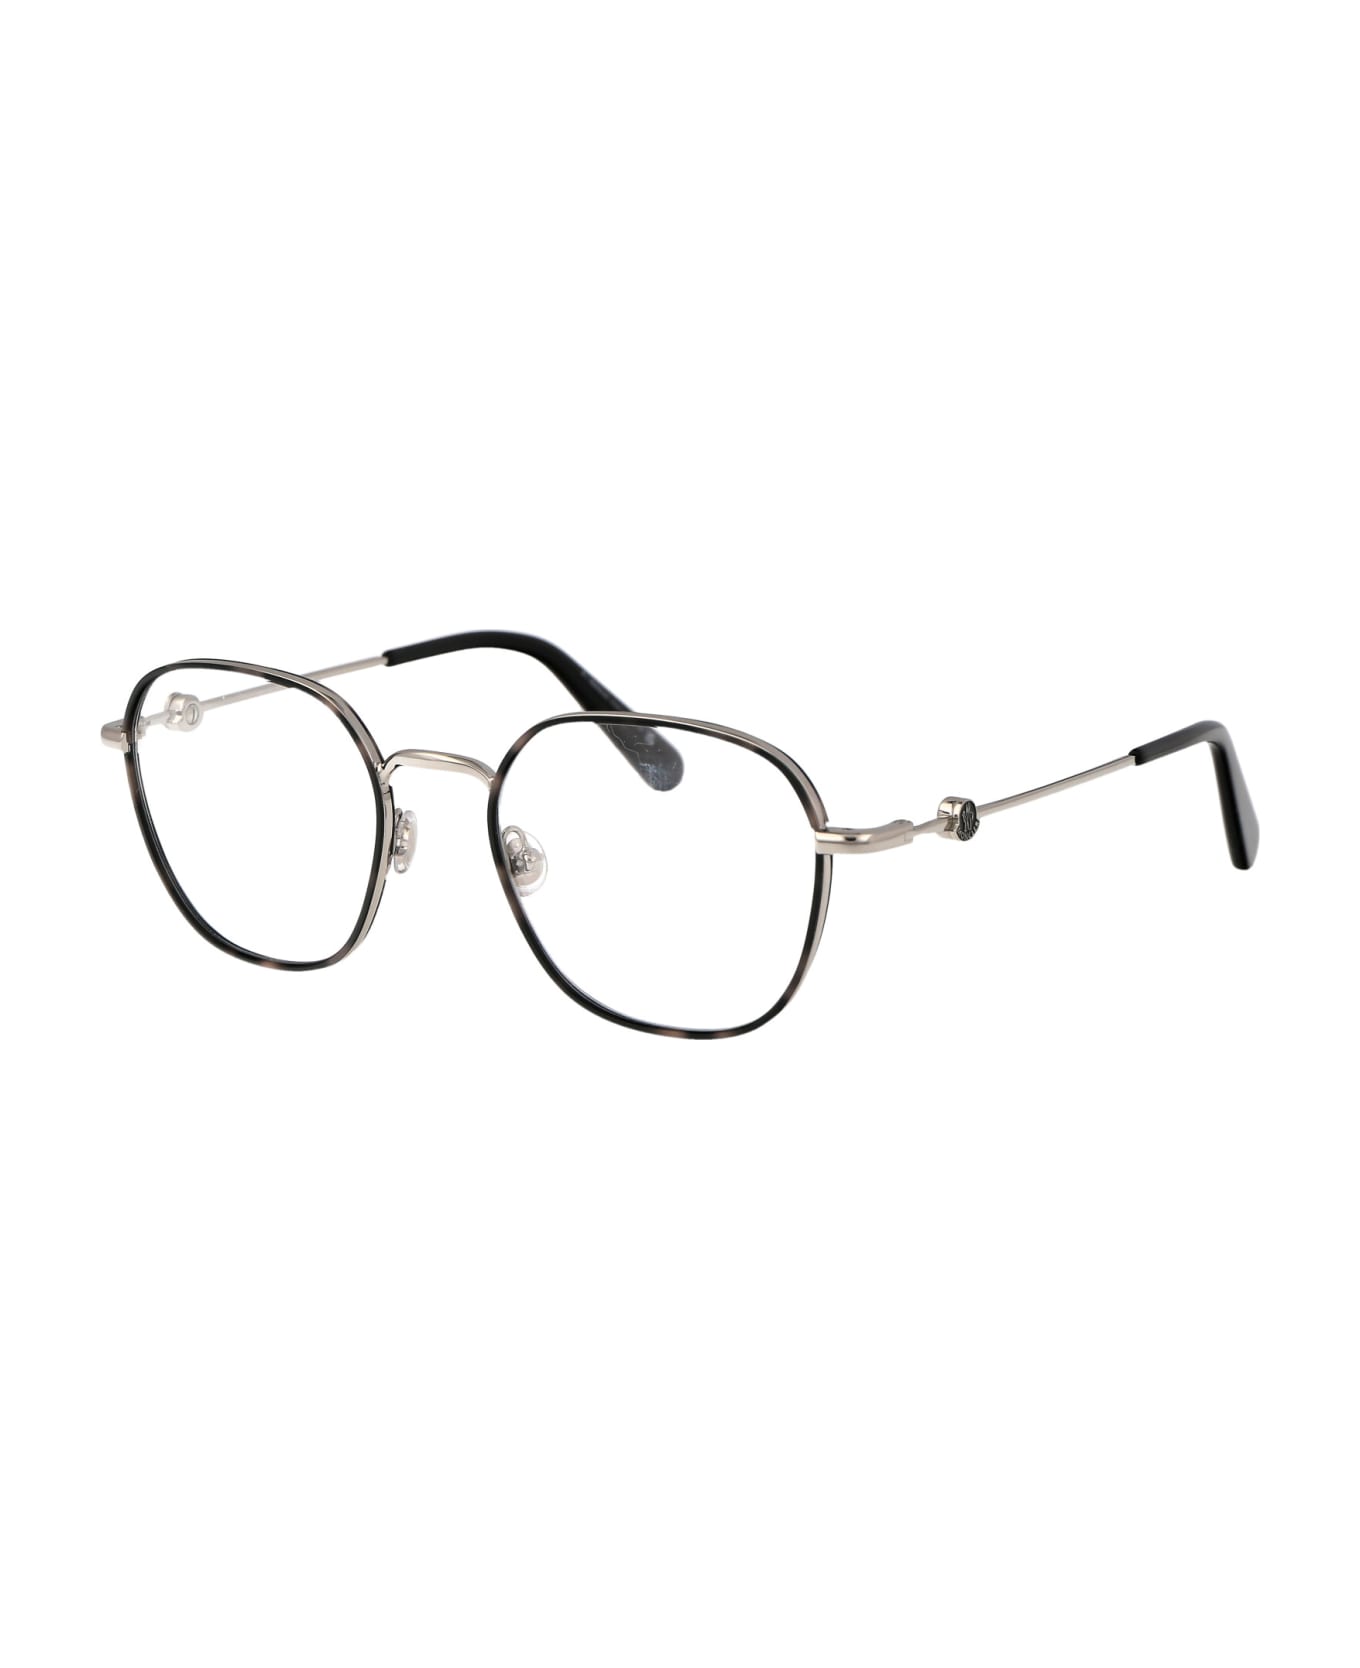 Moncler Eyewear Ml5125 Glasses - 016 Grigio/Avana アイウェア